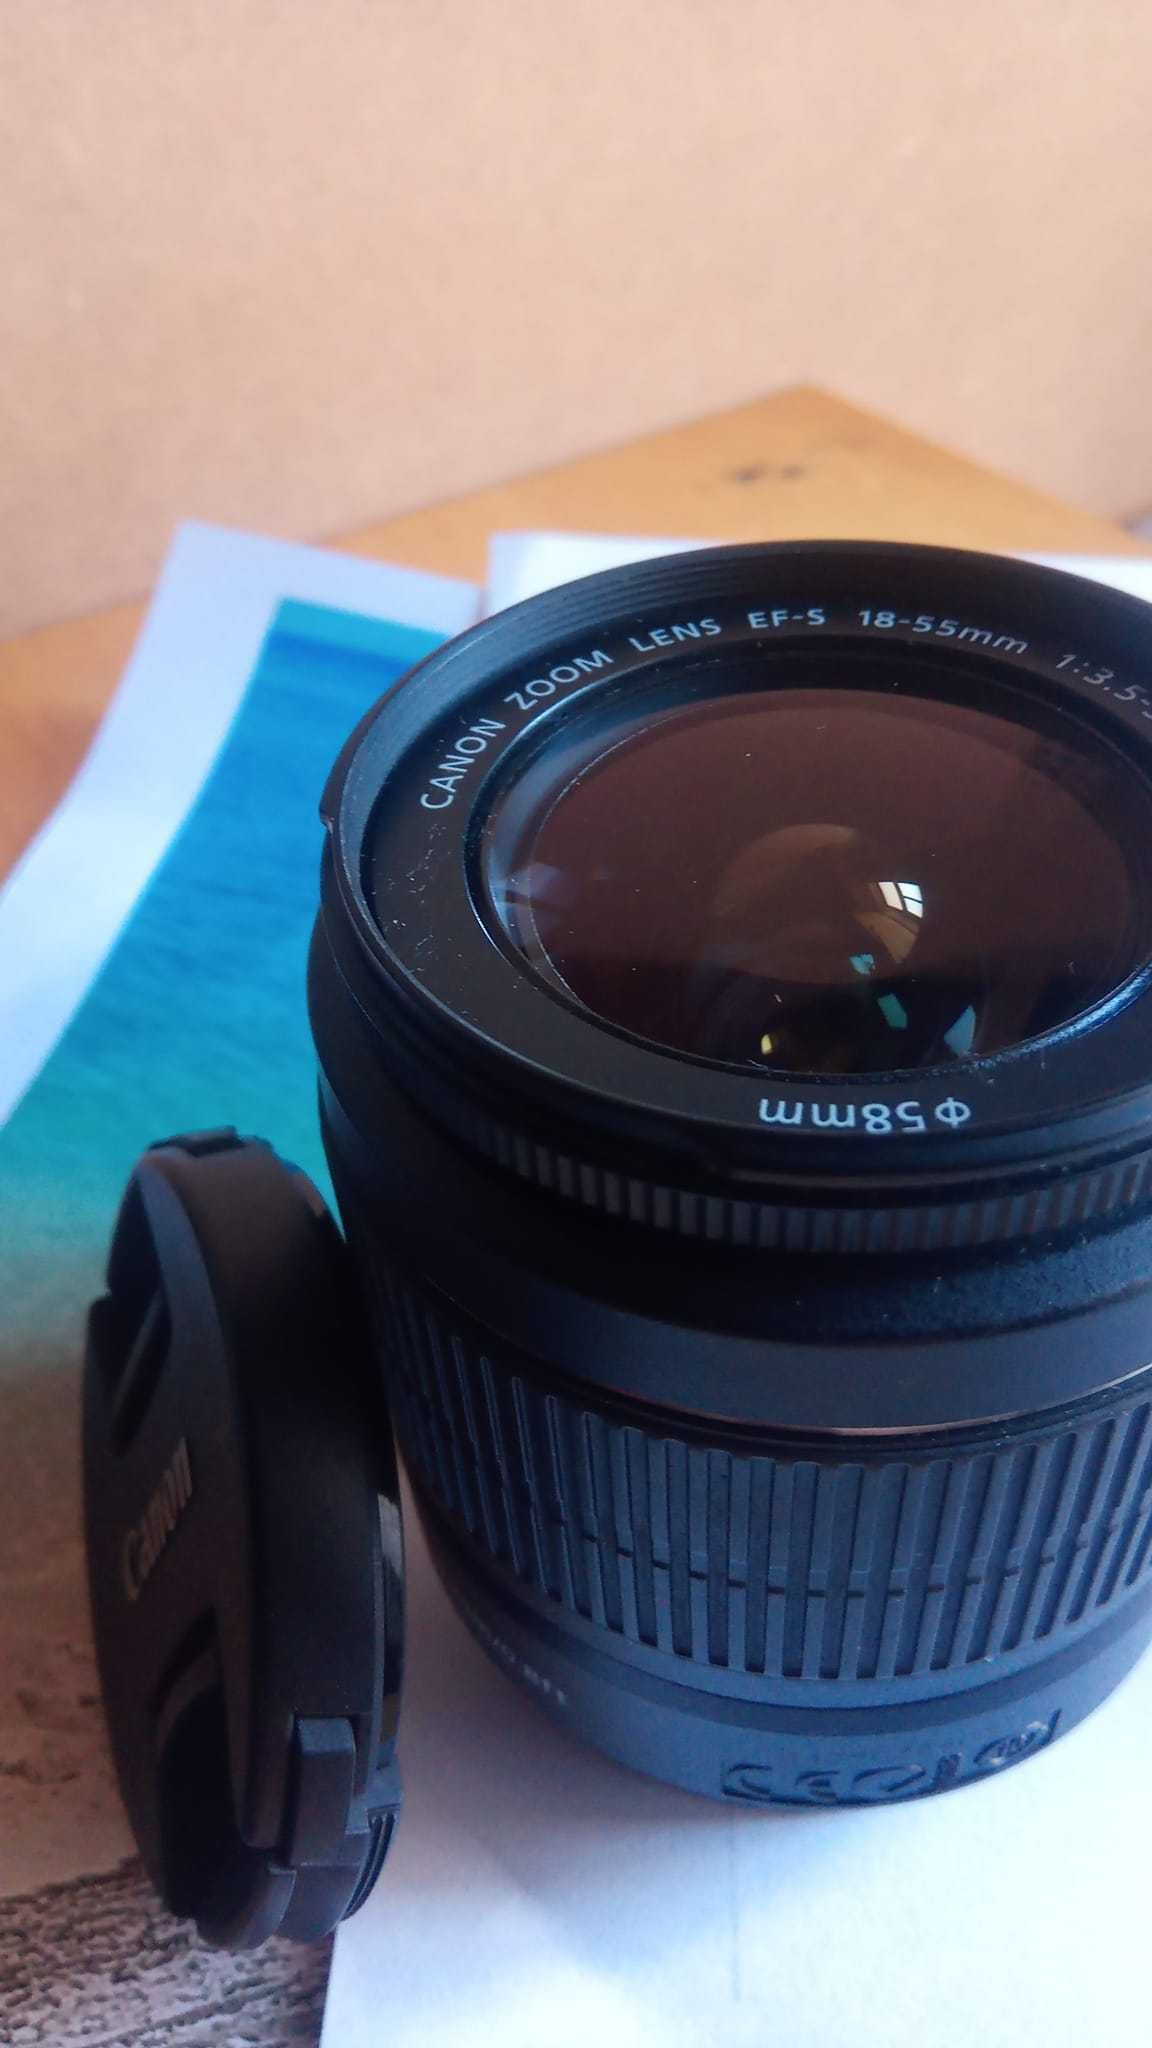 Objectiva lente Canon EFS 18-55mm